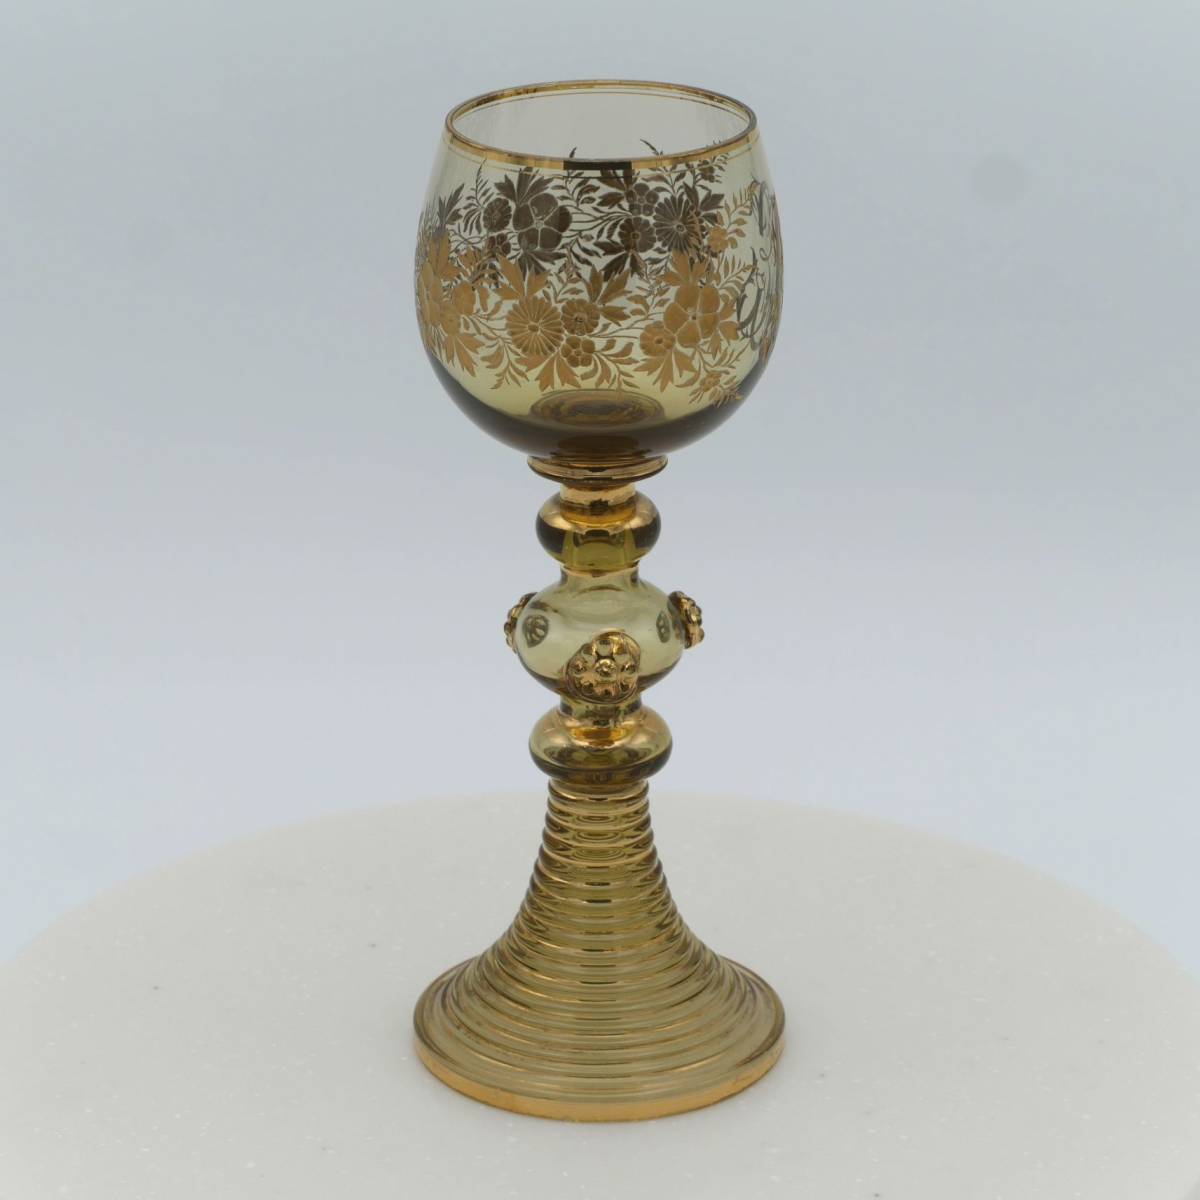 ドイツ 金エナメル彩ルーマースタイル ワイングラス 19C, Gold Colored Roemer Wine Glass, Germany 19C